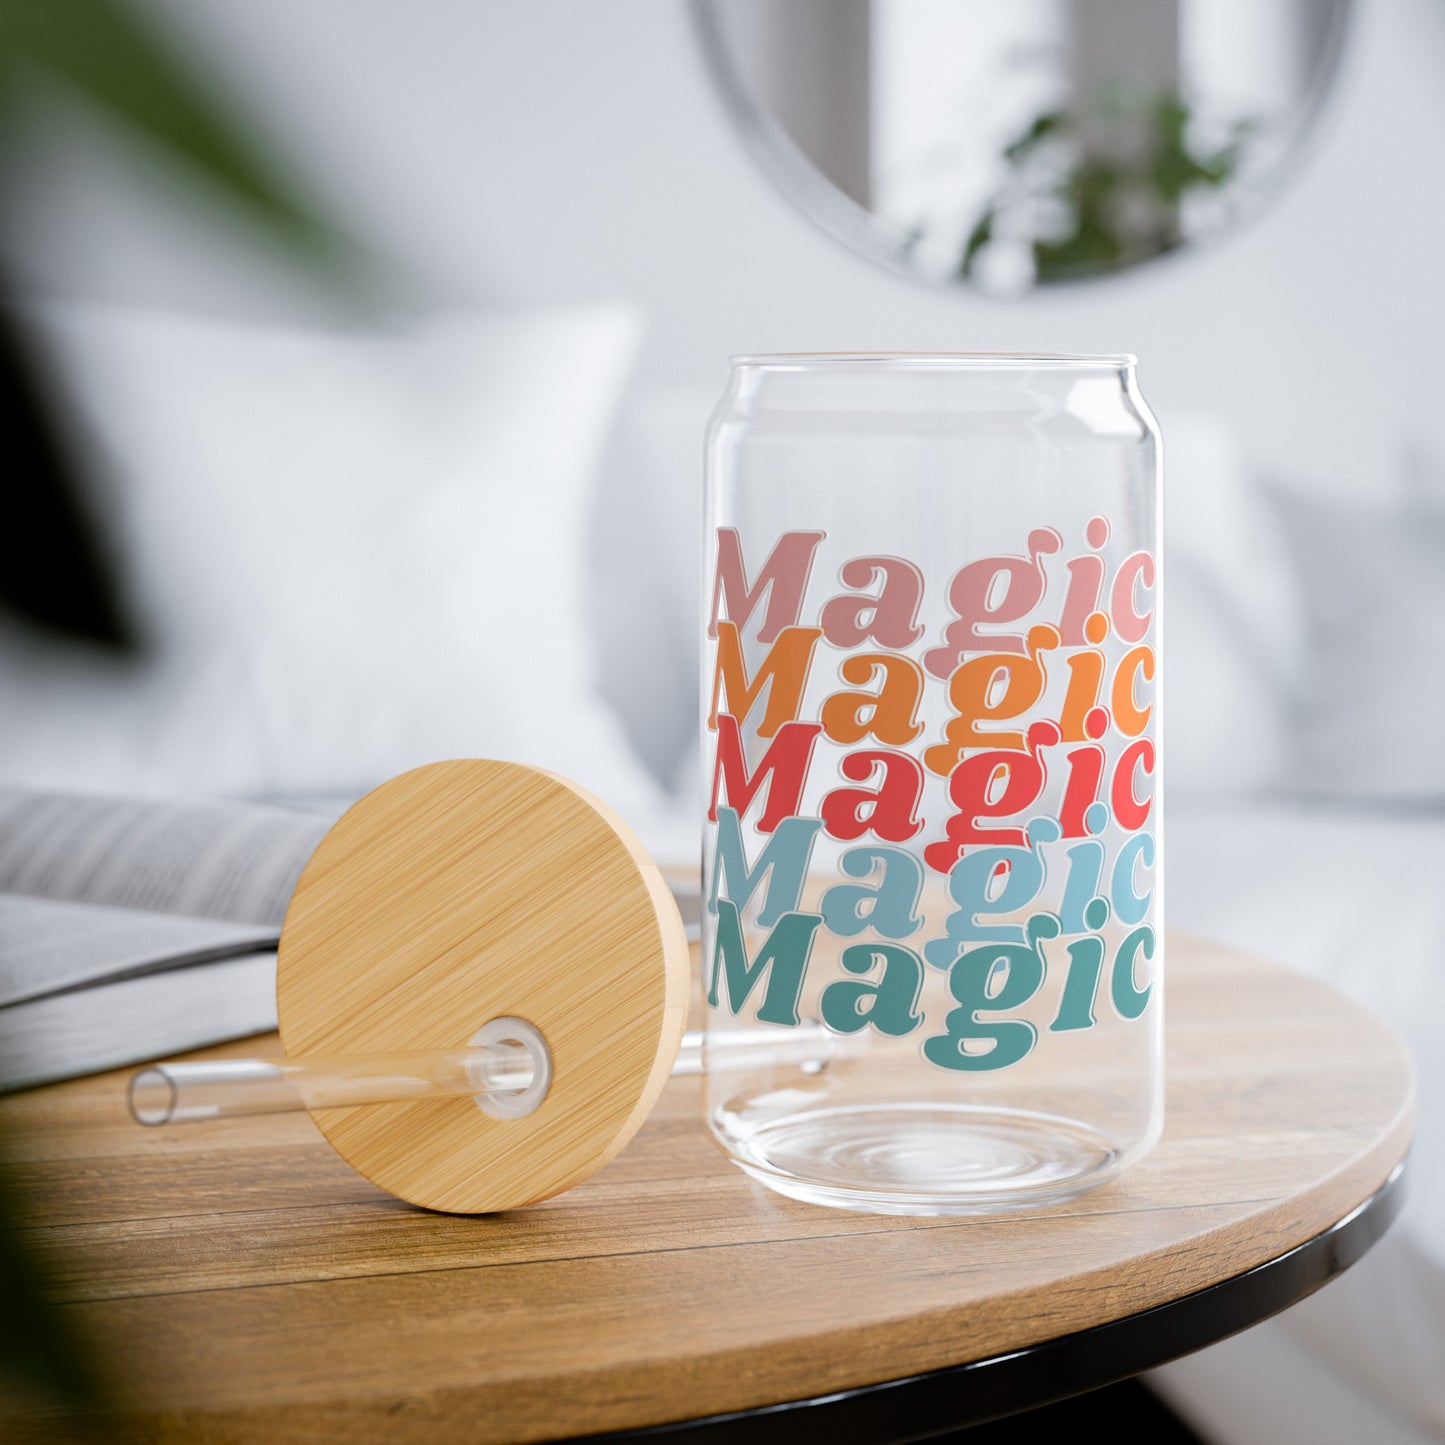 Magic Magic Magic - Sipper Glass, 16oz